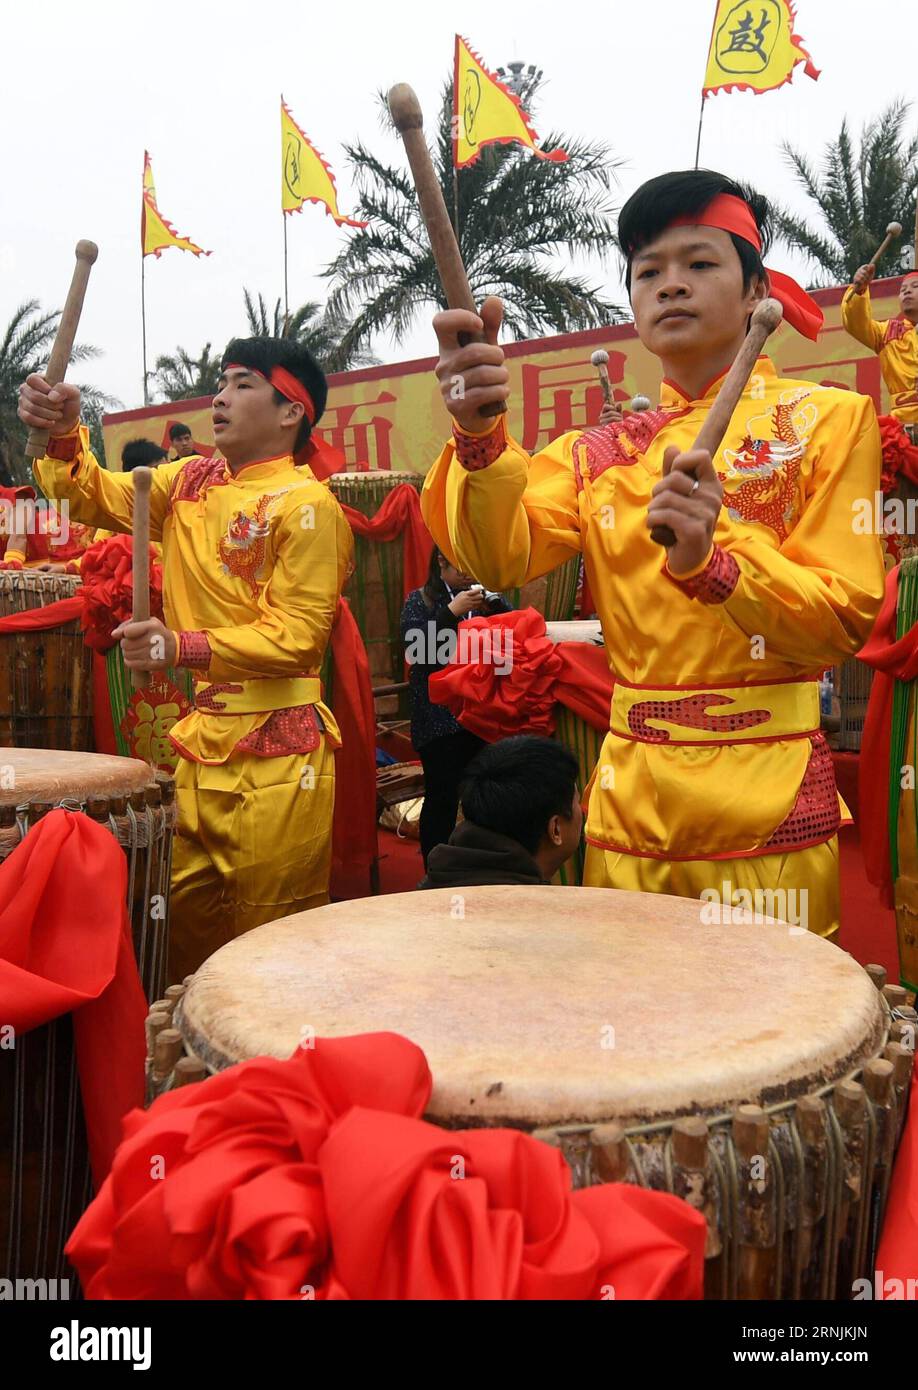 (170202) -- QINZHOU, 2 février 2017 -- les concurrents battent des tambours lors d'une compétition de tambours organisée pour célébrer le Festival du Printemps chinois à Qinzhou, dans la région autonome de Guangxi Zhuang du sud de la Chine, le 2 février 2017.) (wyl) CHINA-GUANGXI-SPRING FESTIVAL-CELEBRATION (CN) ZhangxAilin PUBLICATIONxNOTxINxCHN Qinzhou Feb 2 2017 concurrents battent des tambours lors d'une compétition de tambour héros pour célébrer le Festival de printemps chinois à Qinzhou Sud Chine S Guangxi Zhuang région autonome février 2 2017 wyl Chine Guangxi Spring Festival Celebration CN ZhangxAilin PUBLICATIONxNOxNoxNoxNotin Banque D'Images